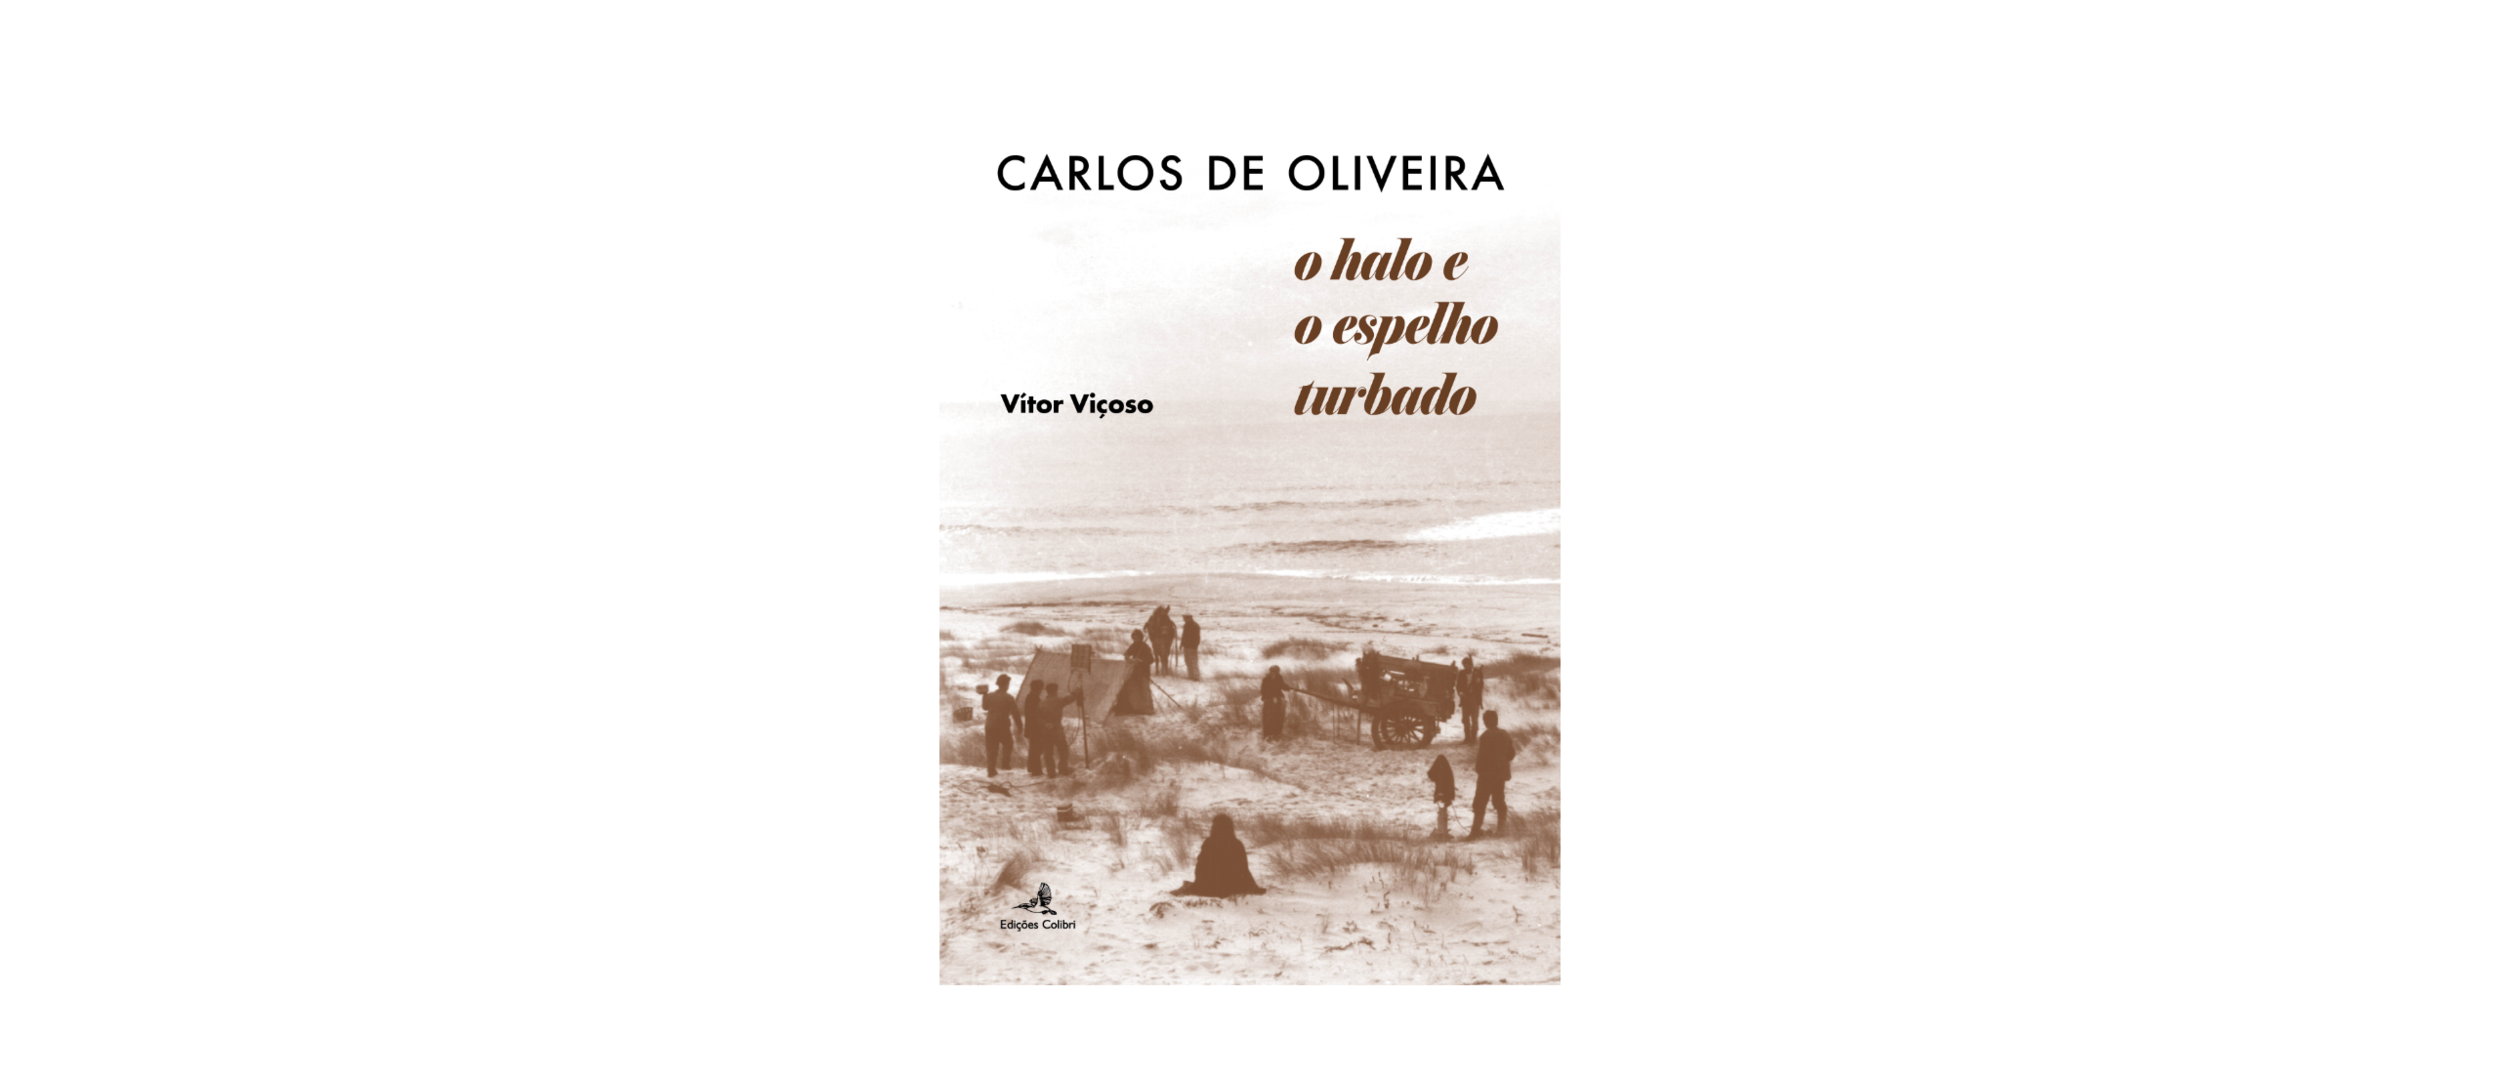 Lançamento do livro Carlos de Oliveira: o halo e o espelho turbado